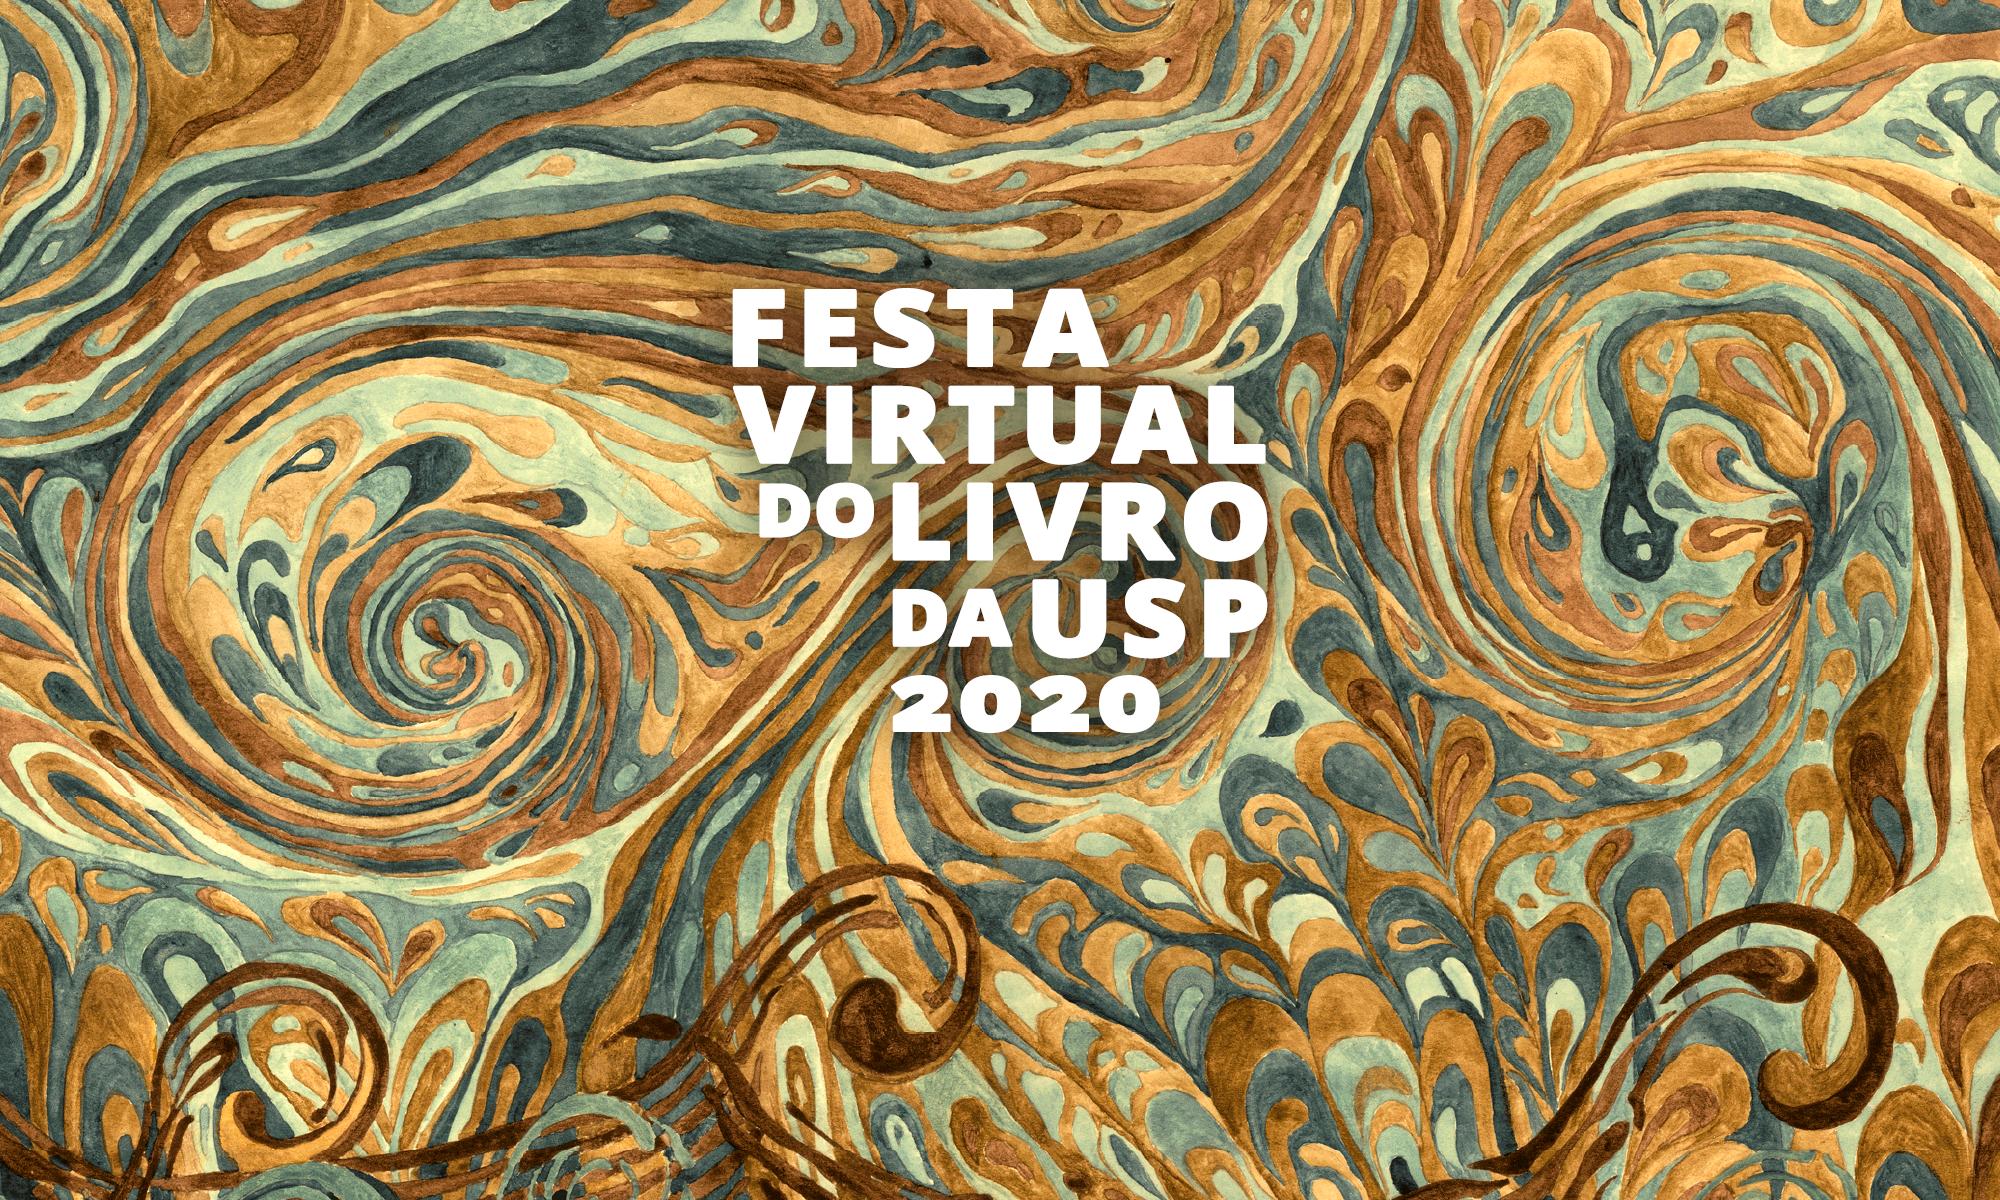 Festa Virtual do Livro da USP